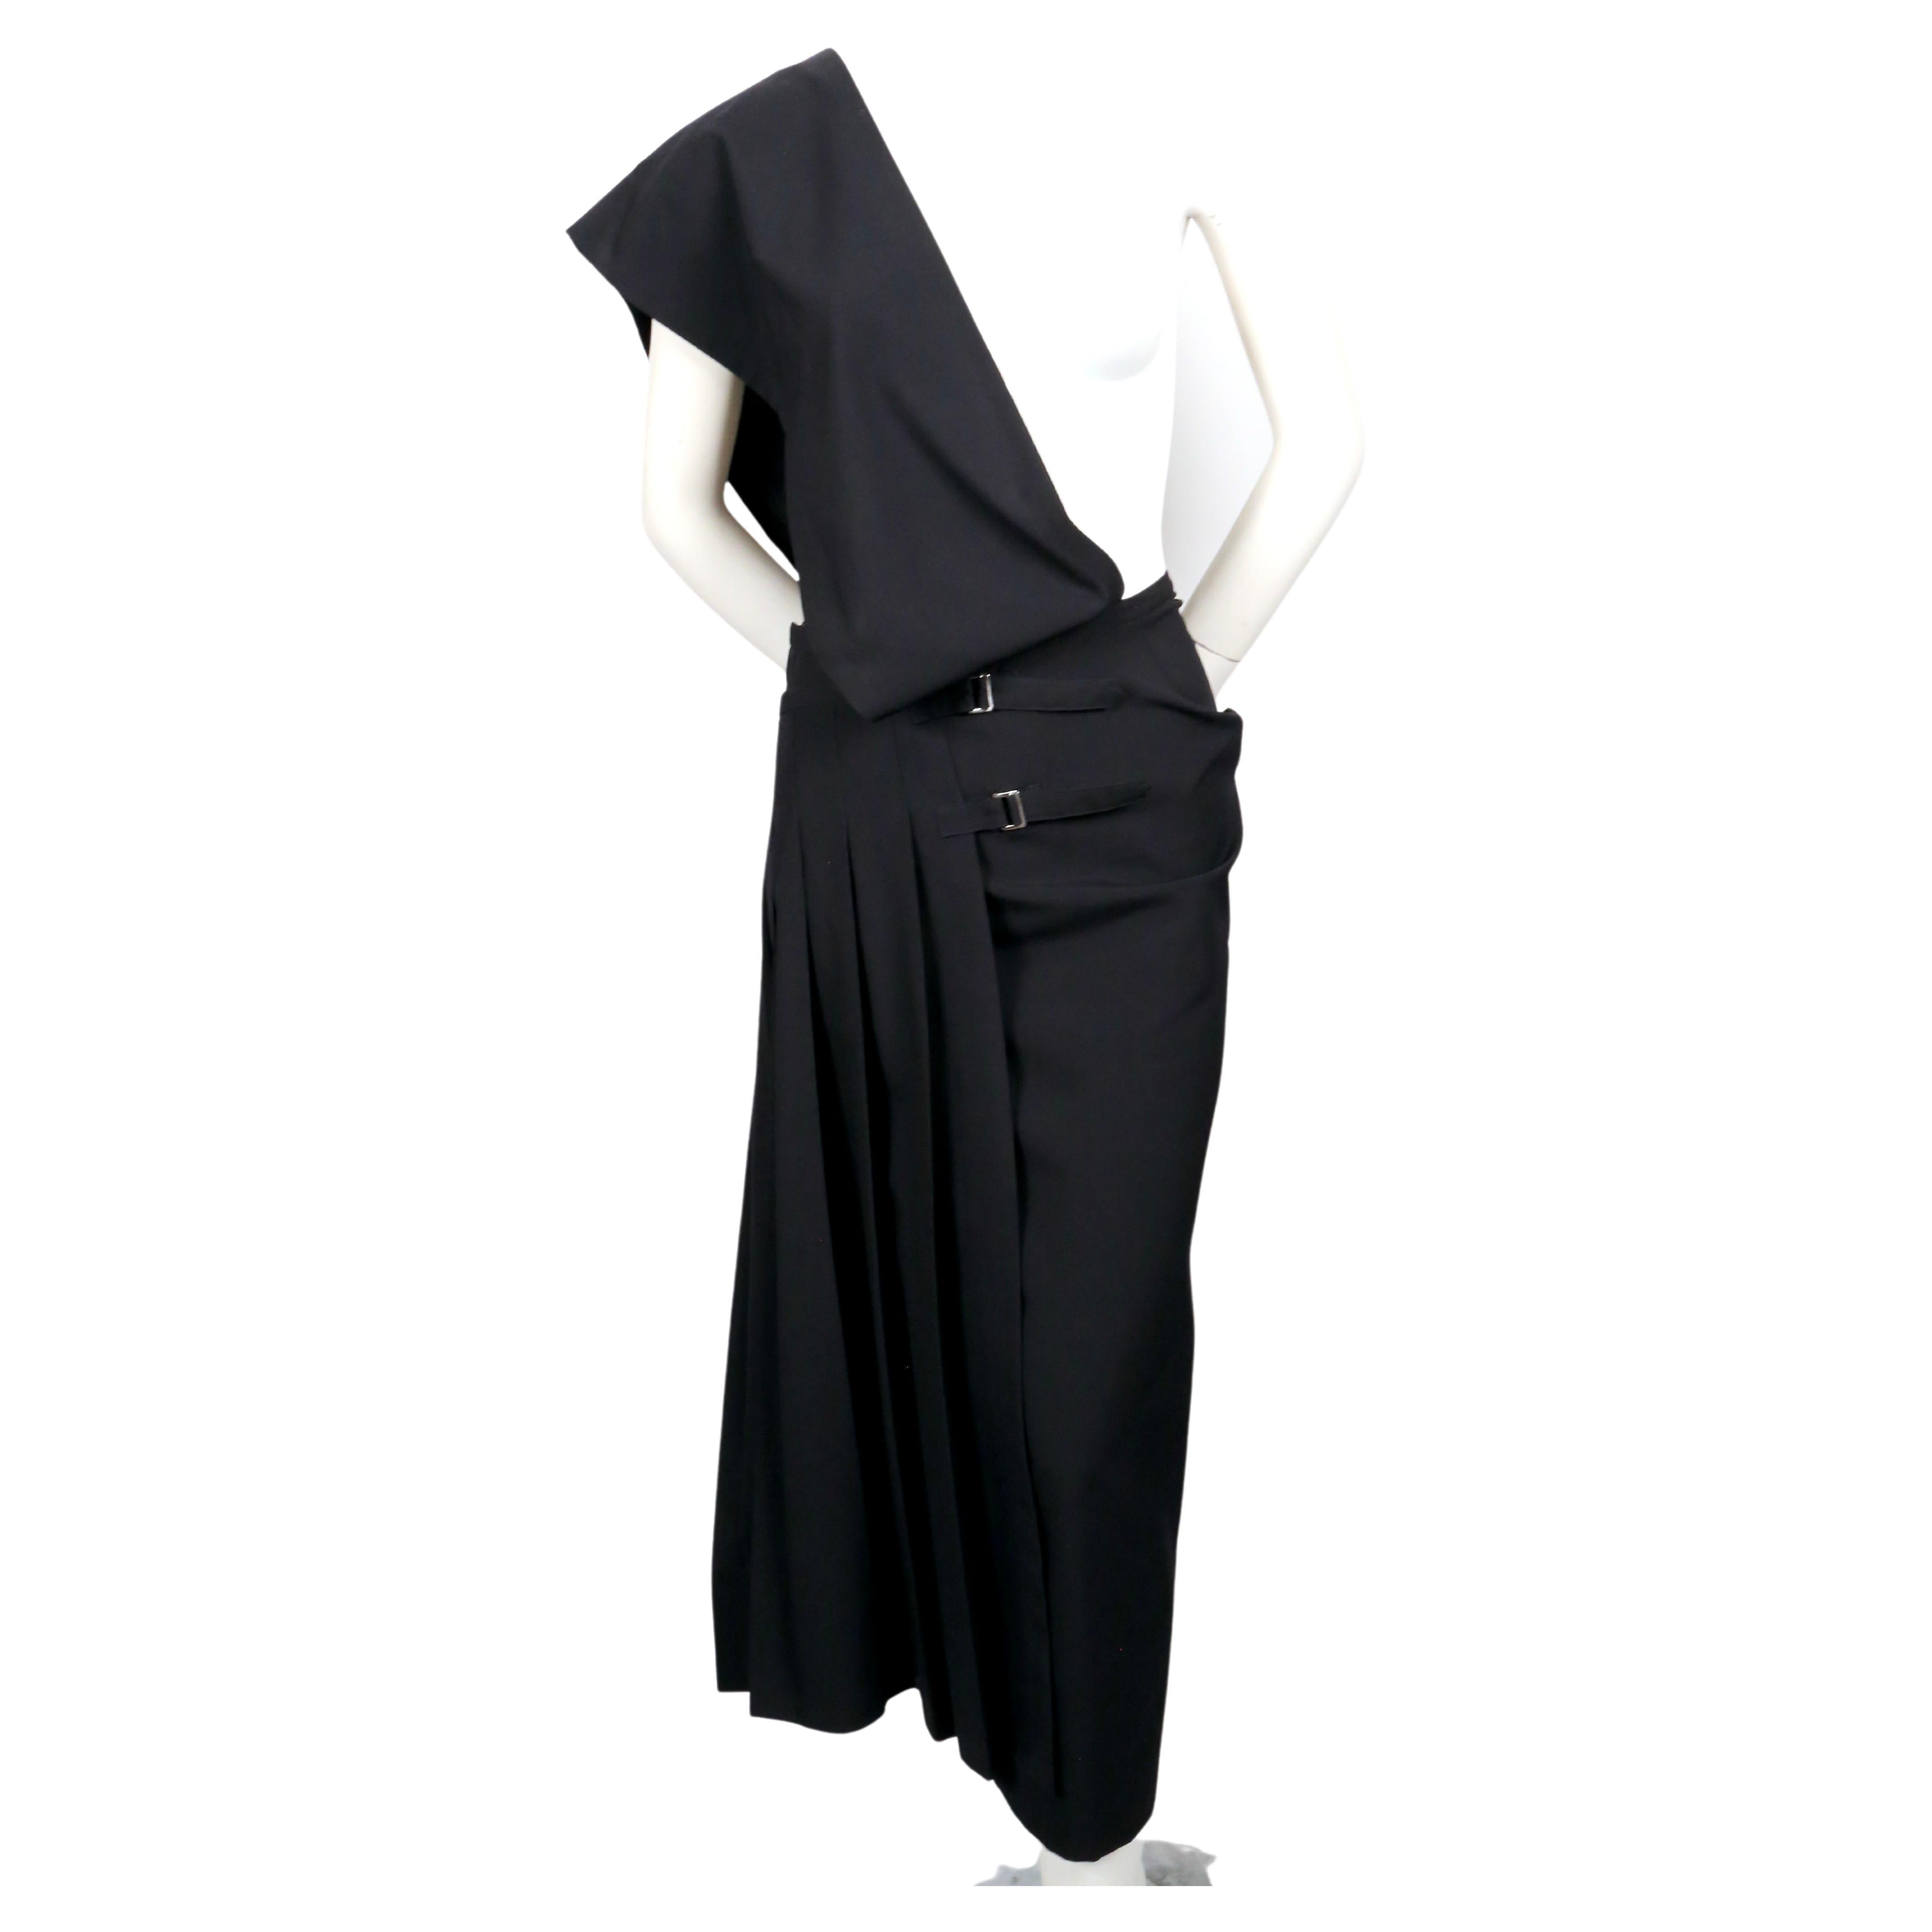 Robe asymétrique noire à épaule unique et jupe plissée enveloppante, conçue par Rei Kawakubo pour Comme Des Garcons, datant de 1989. Taille 'M'. Mesure approximative à l'intérieur de la taille 28